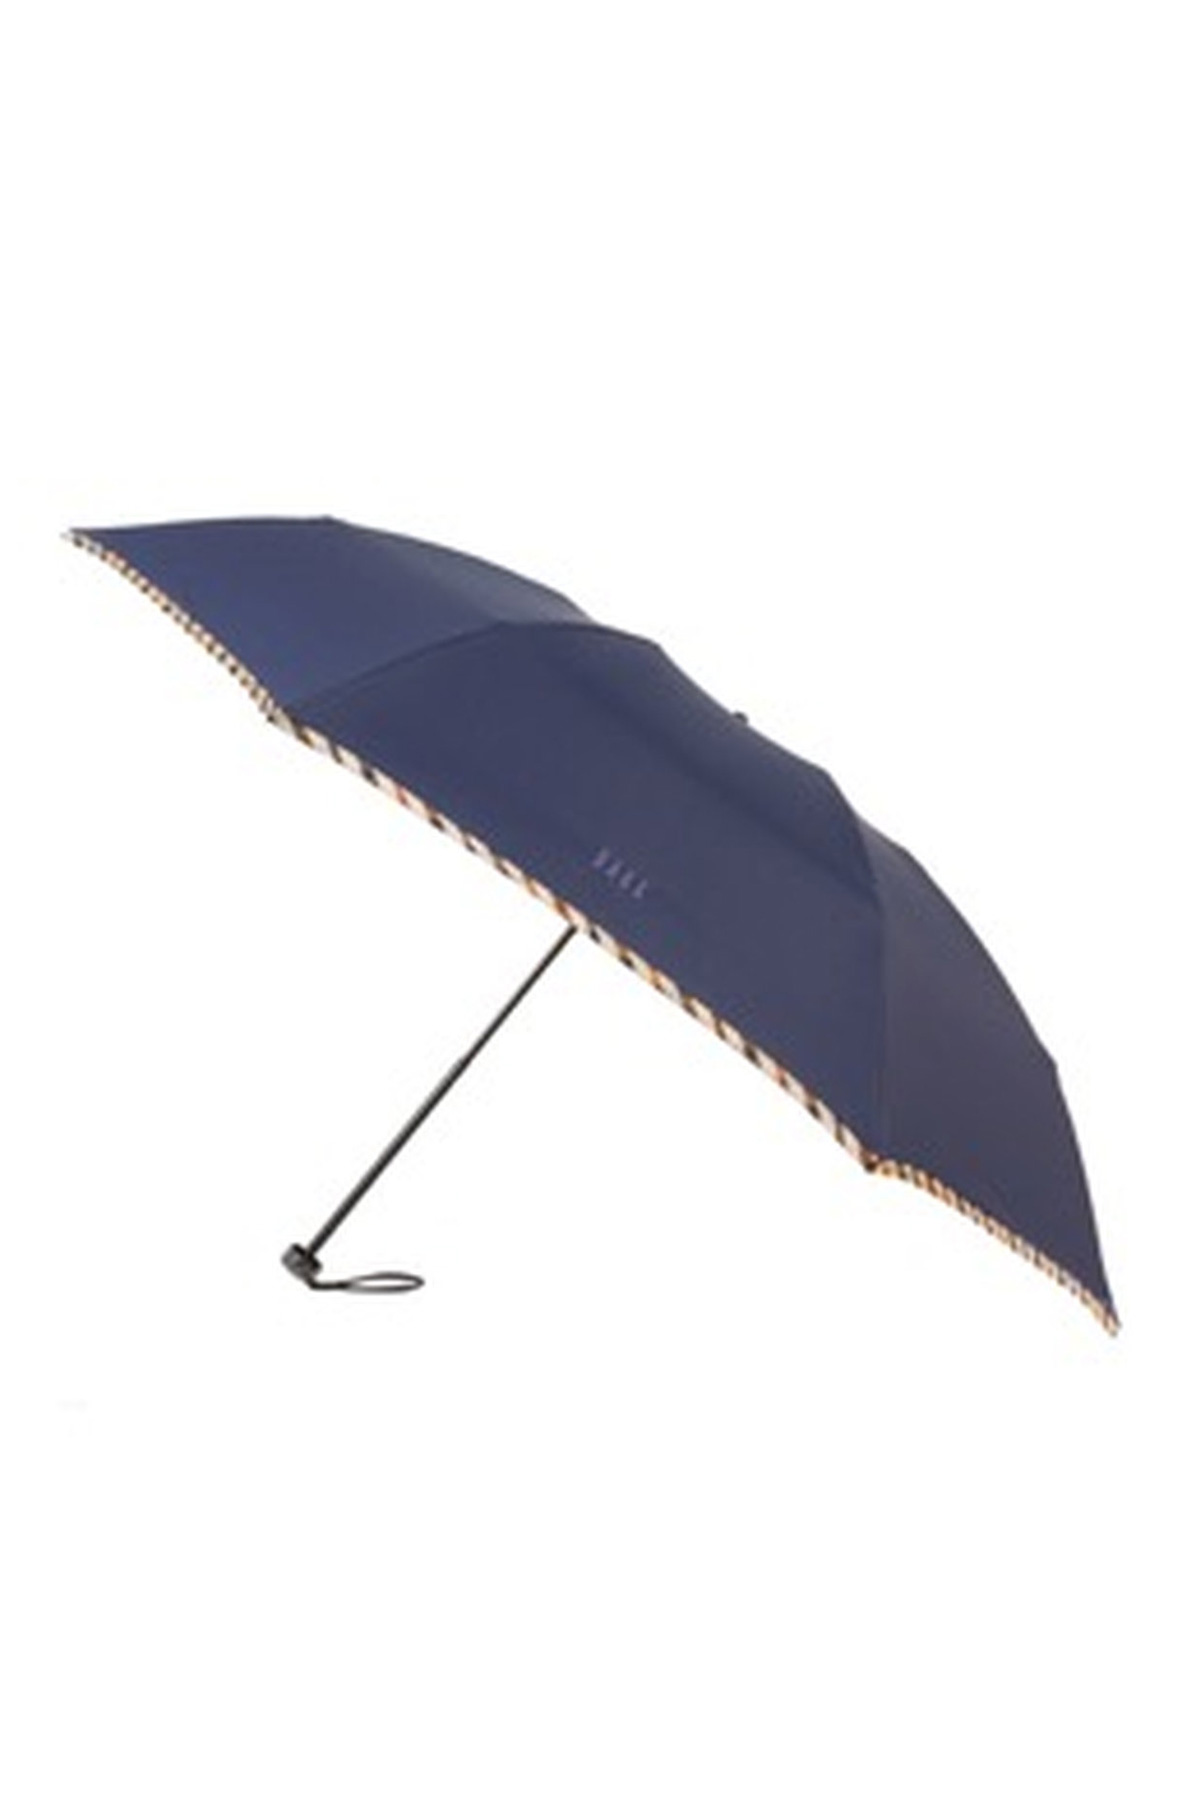 【紳士雨傘】折りたたみ傘無地パイピング 詳細画像 75/ディープブルー